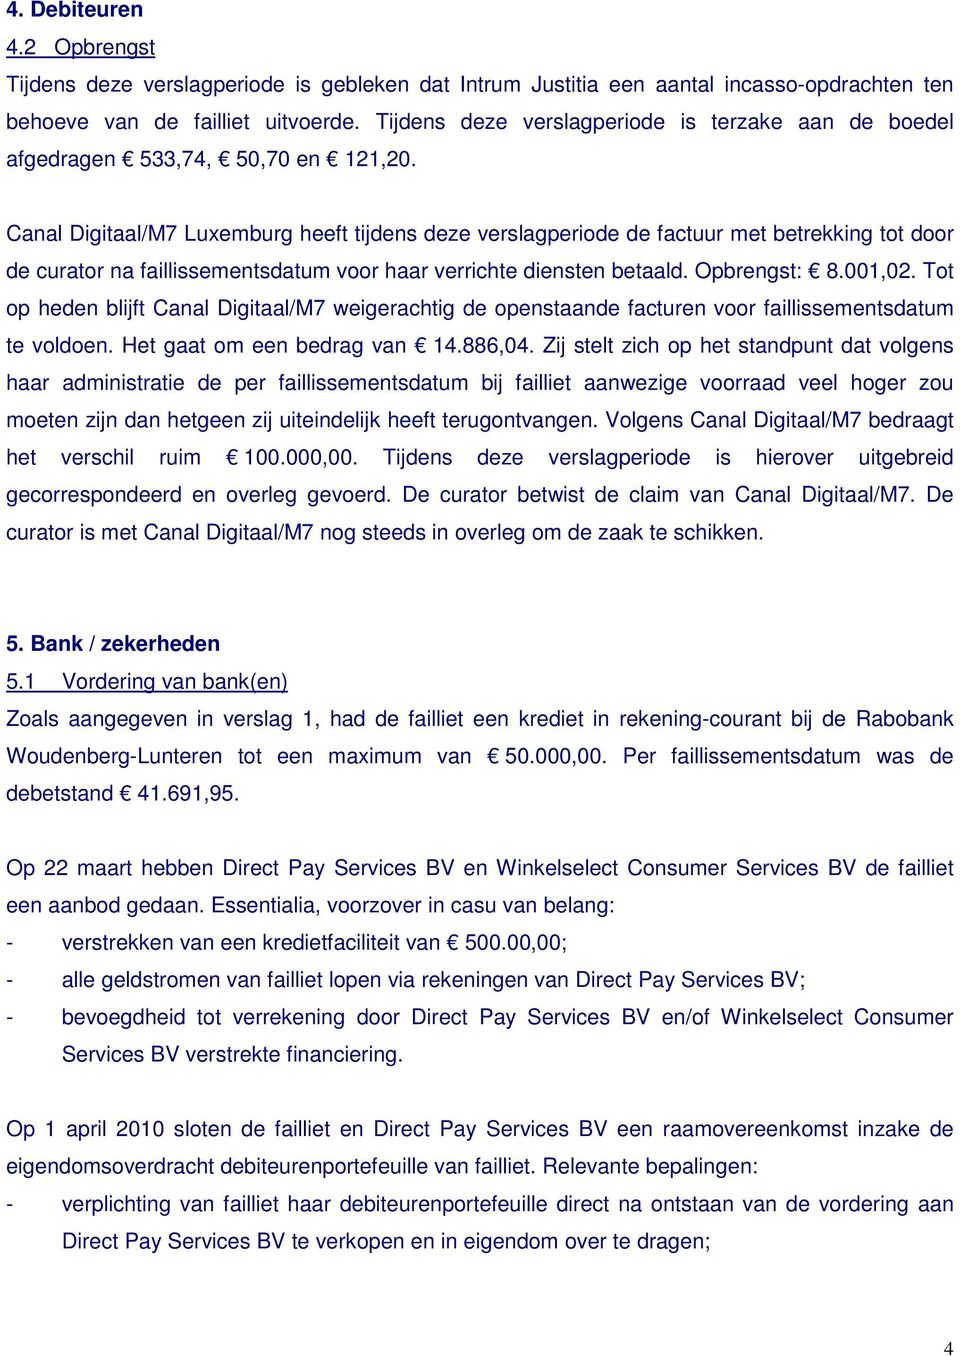 Canal Digitaal/M7 Luxemburg heeft tijdens deze verslagperiode de factuur met betrekking tot door de curator na faillissementsdatum voor haar verrichte diensten betaald. Opbrengst: 8.001,02.